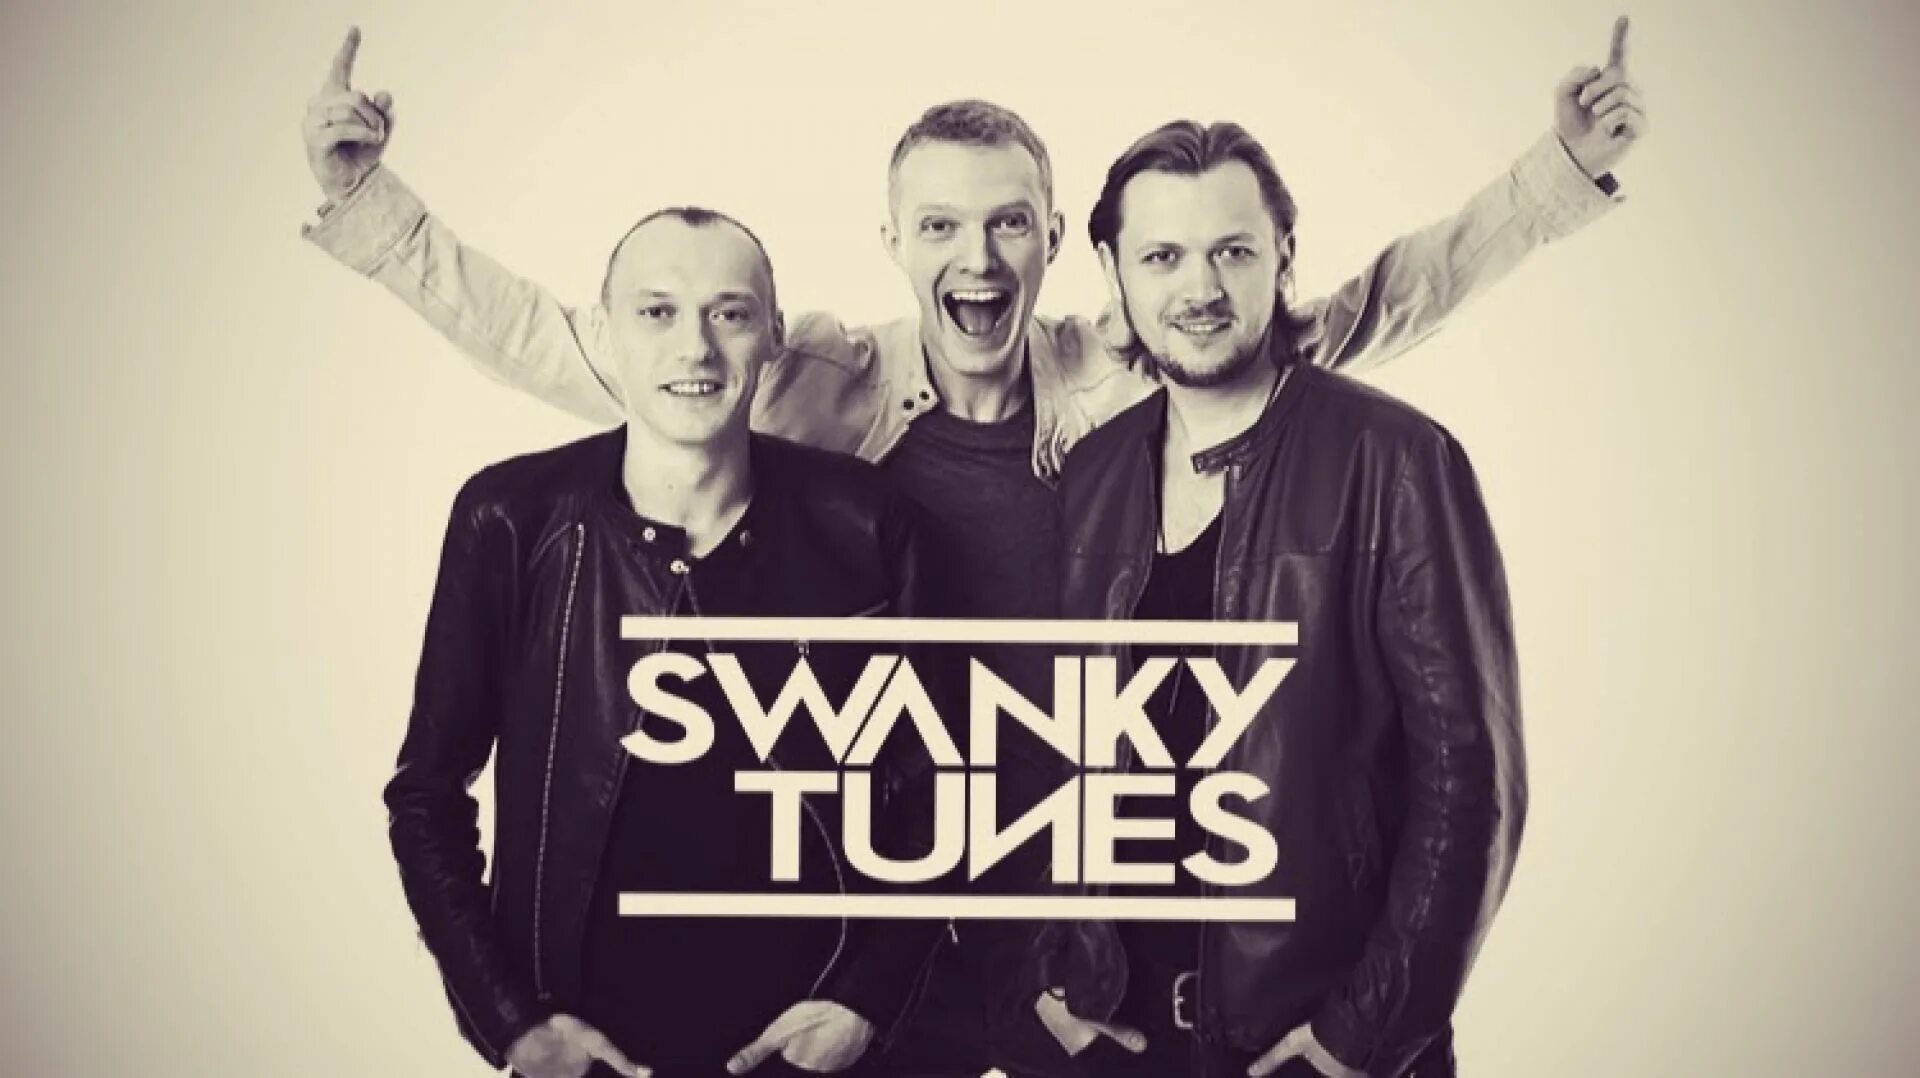 Swanky tunes remix. Группа Swanky Tunes. Фото группы Swanky Tunes. Swanky Tunes солистка.